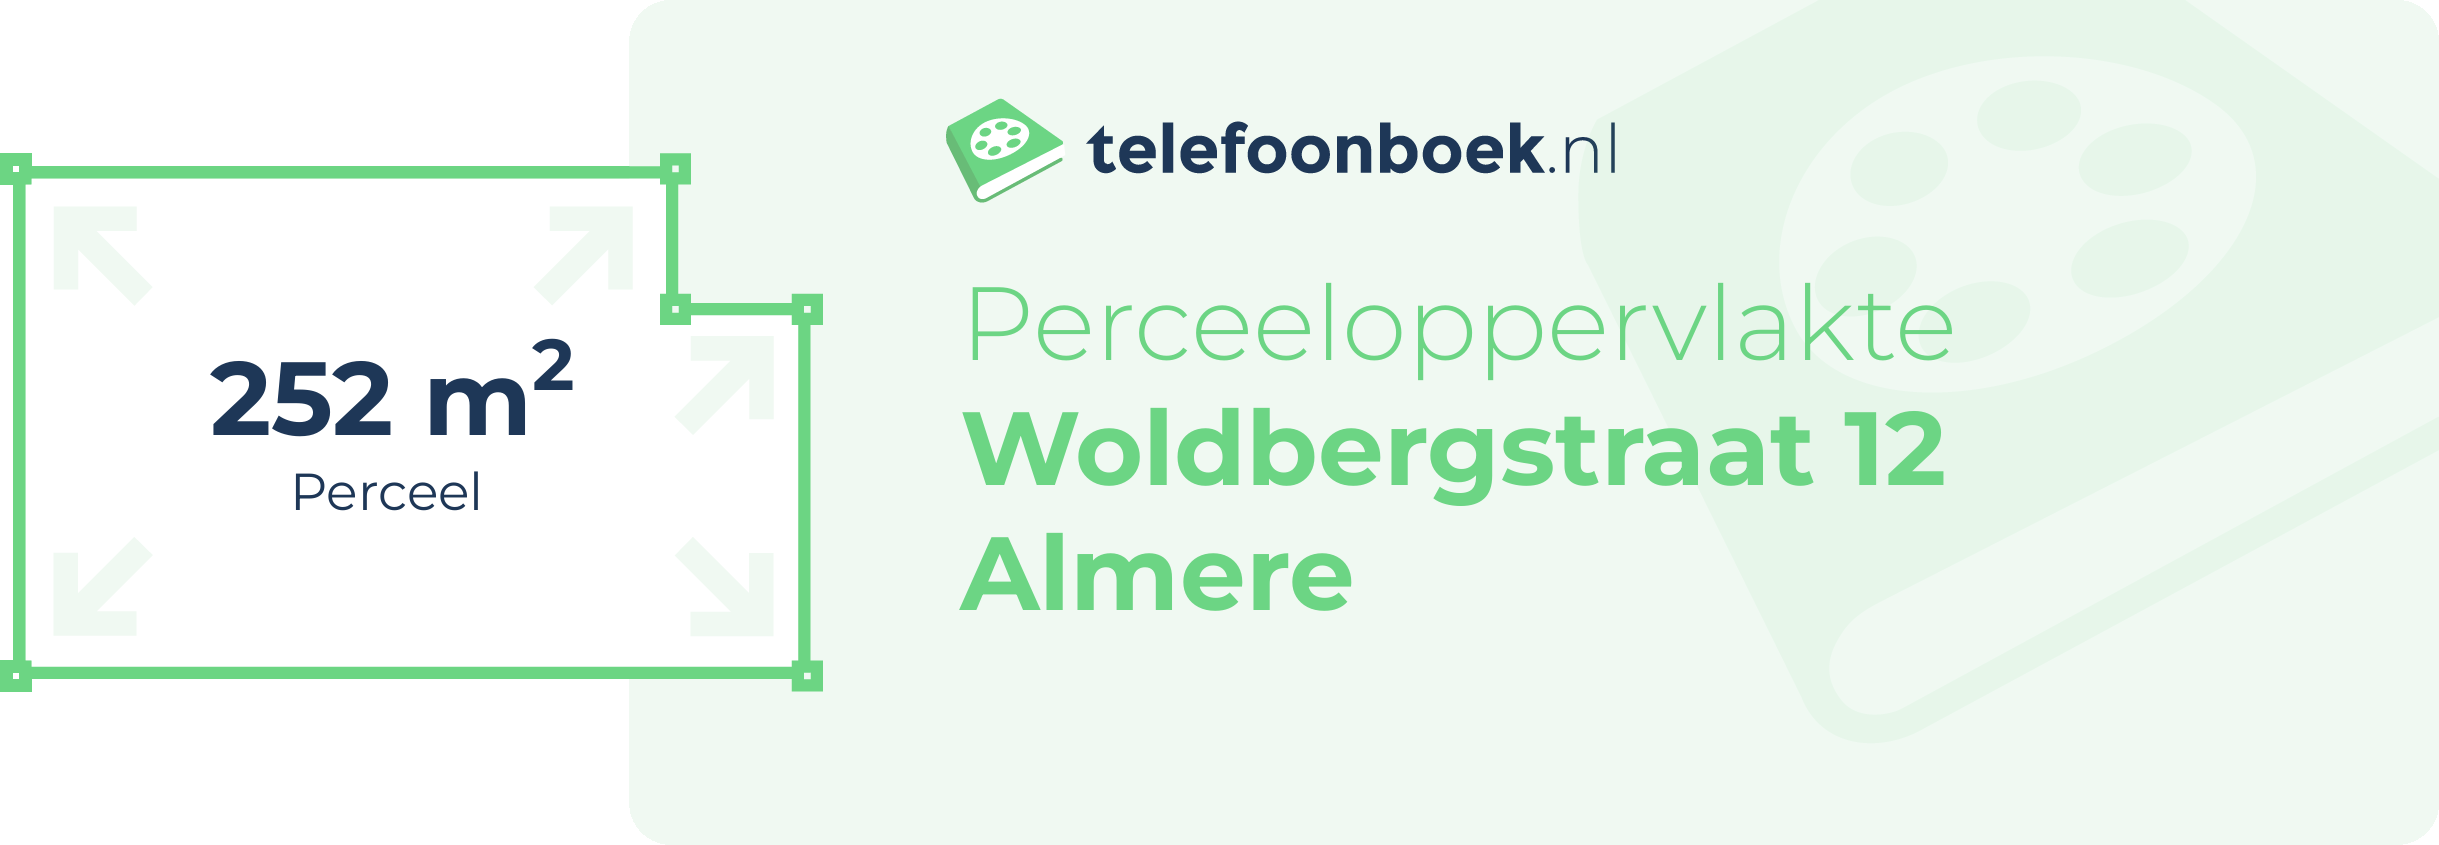 Perceeloppervlakte Woldbergstraat 12 Almere